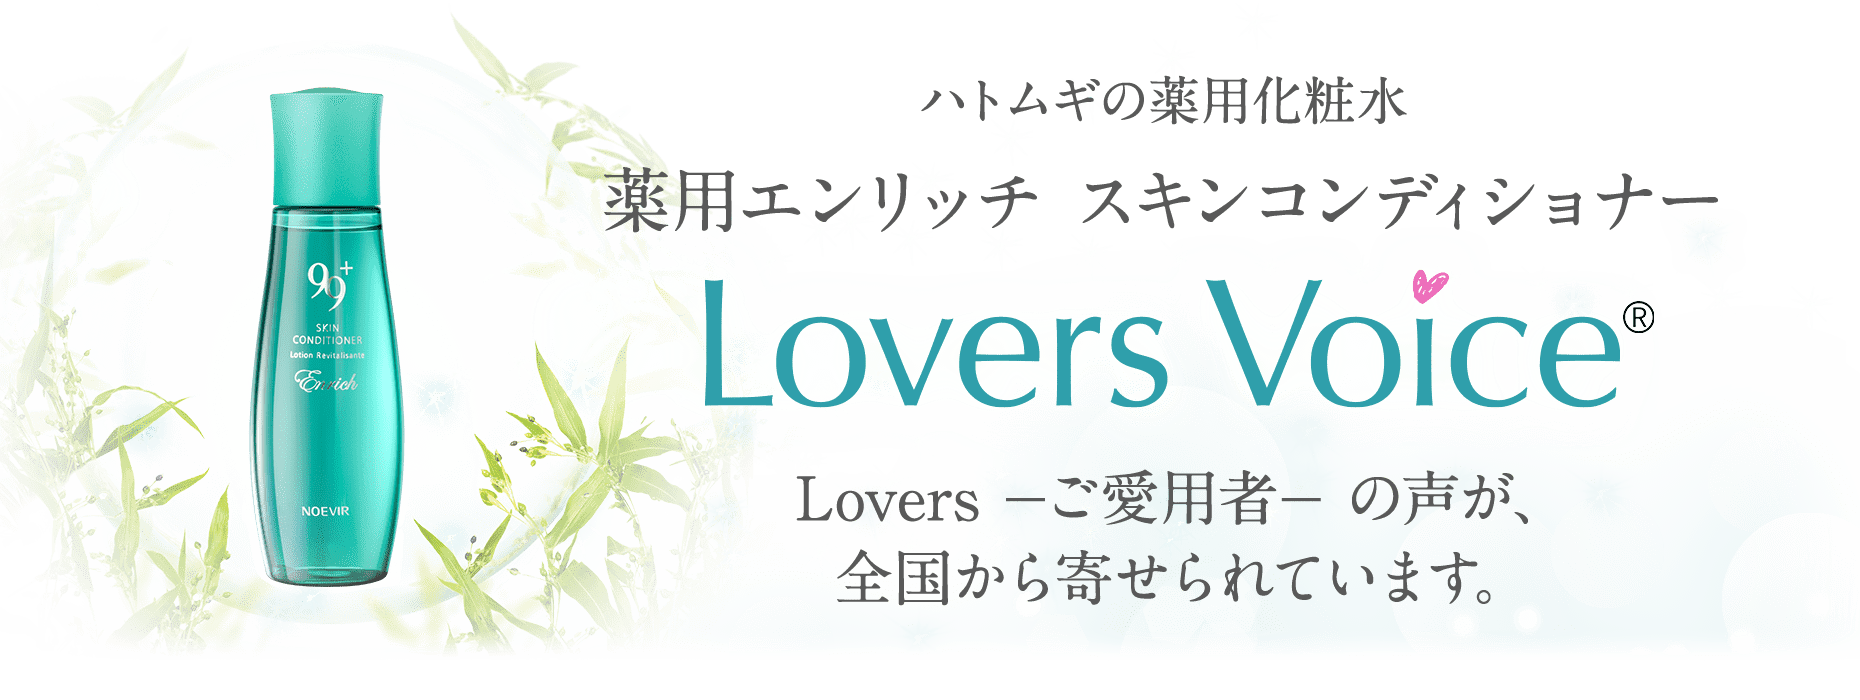 ハトムギの薬用化粧水 薬用エンリッチ スキンコンディショナー Lovers Voice